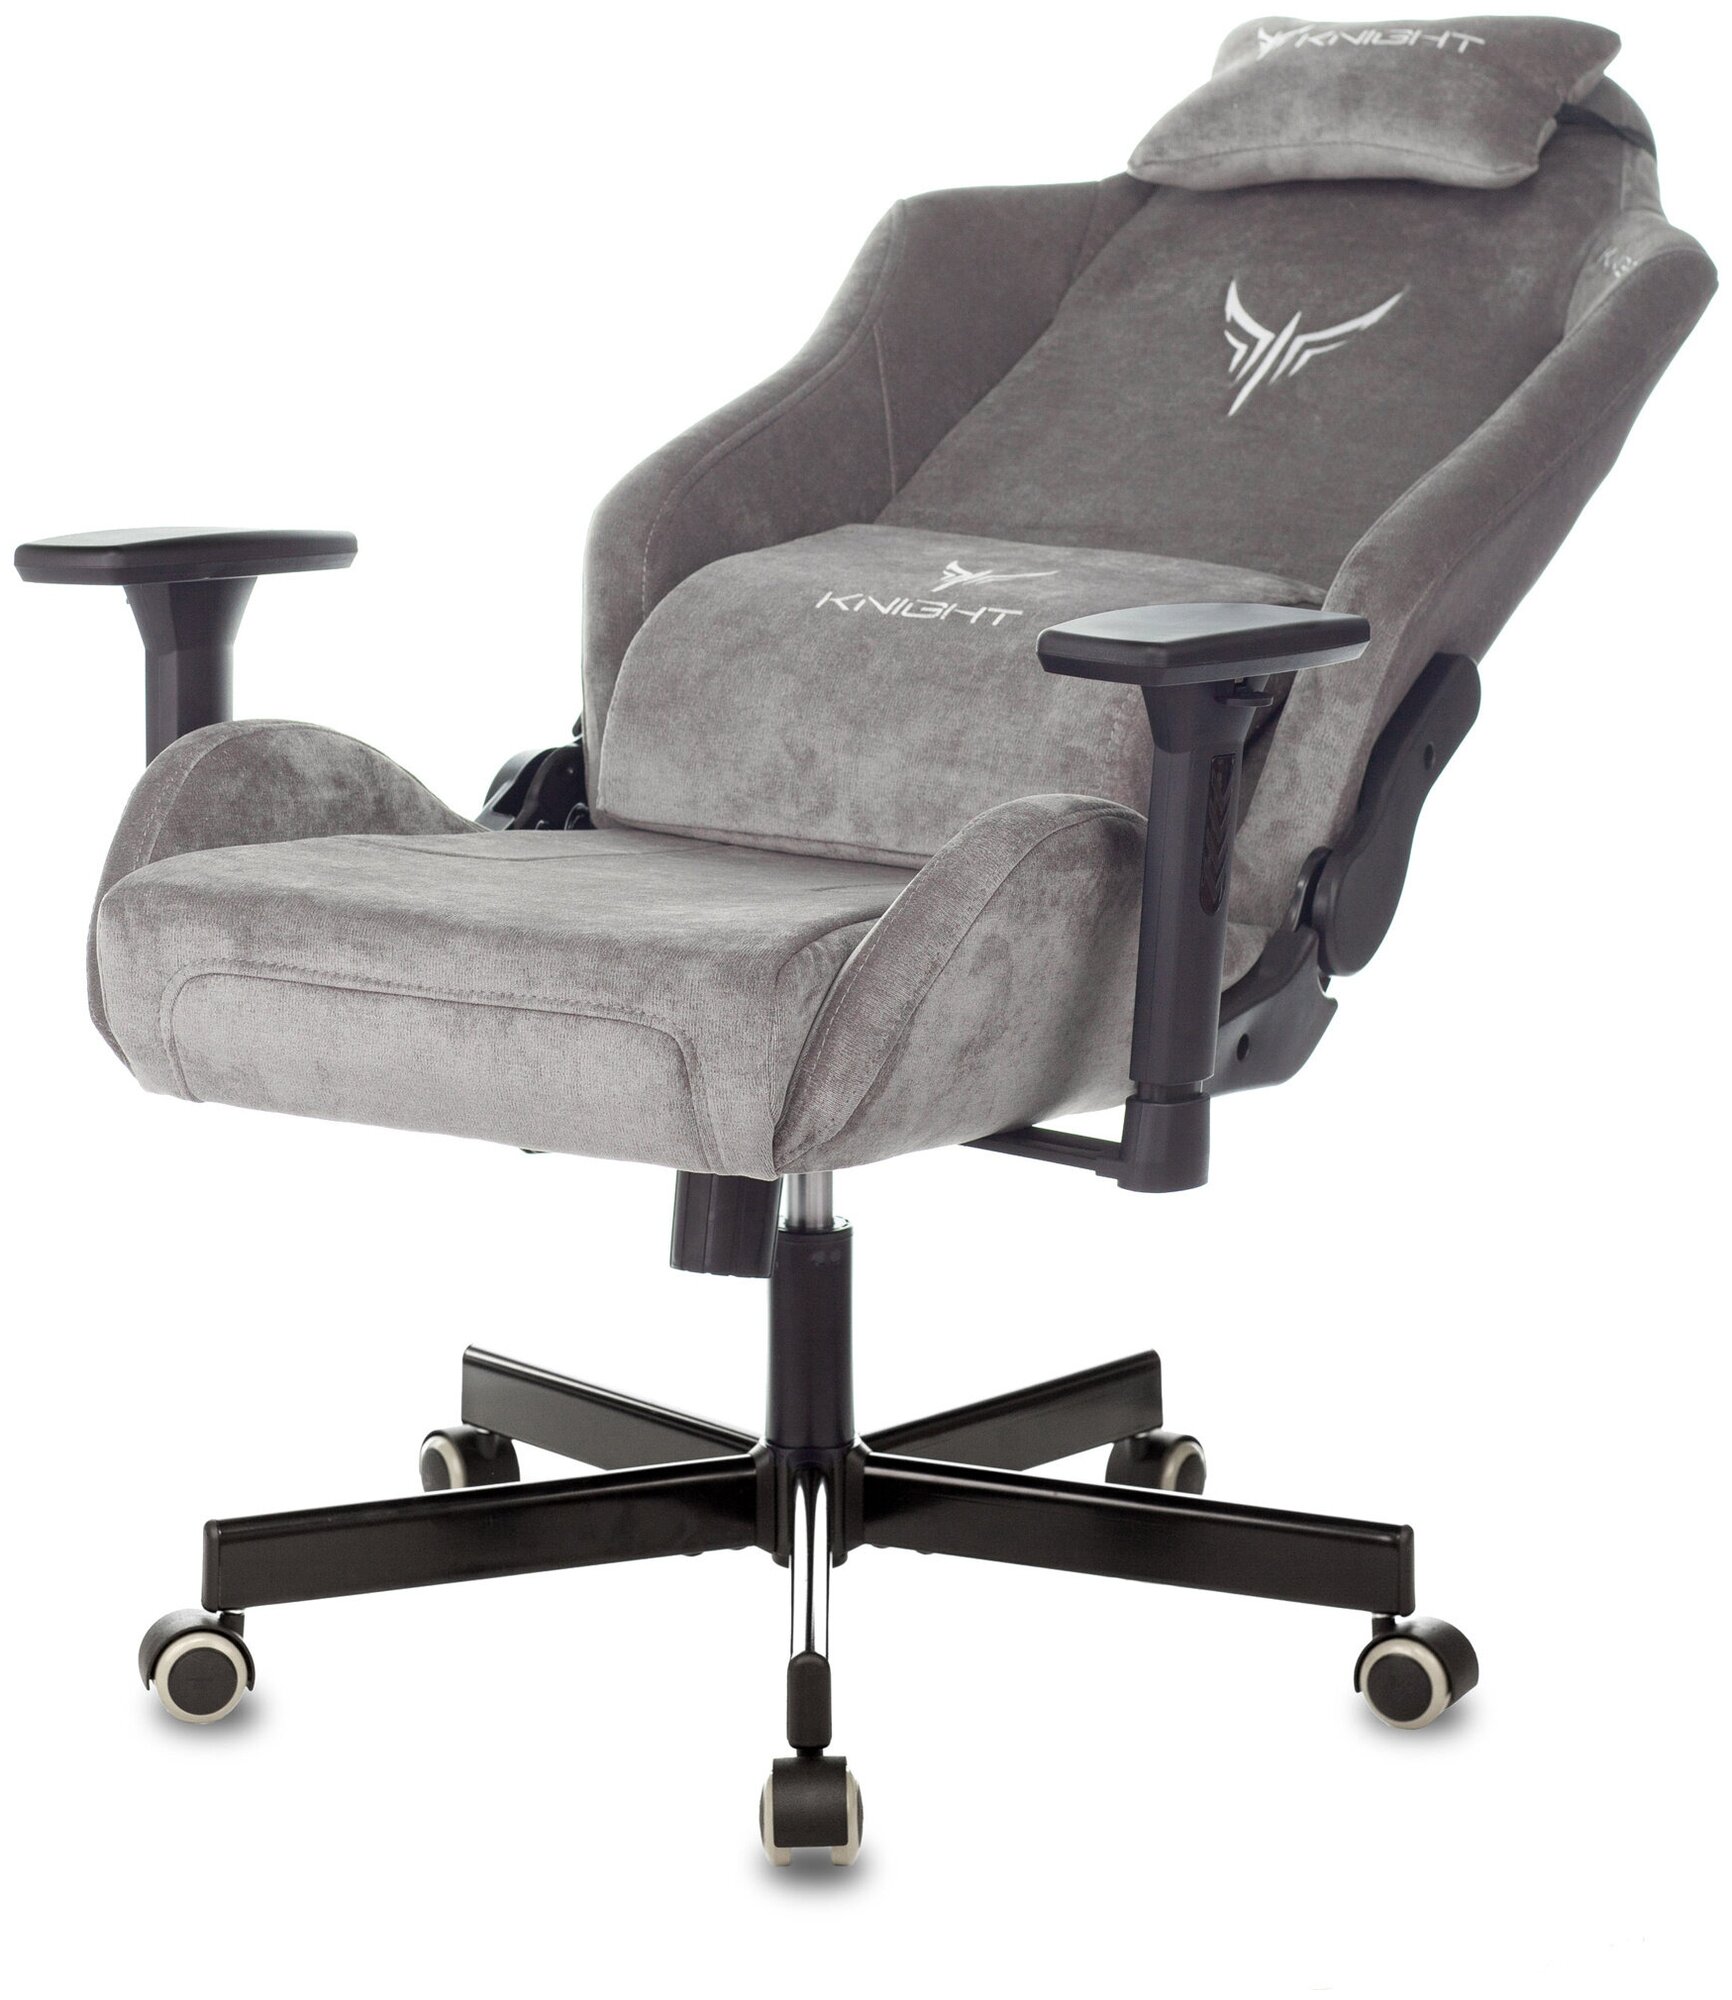 Компьютерное кресло Бюрократ Knight N1 Fabric игровое, обивка: текстиль, цвет: серый